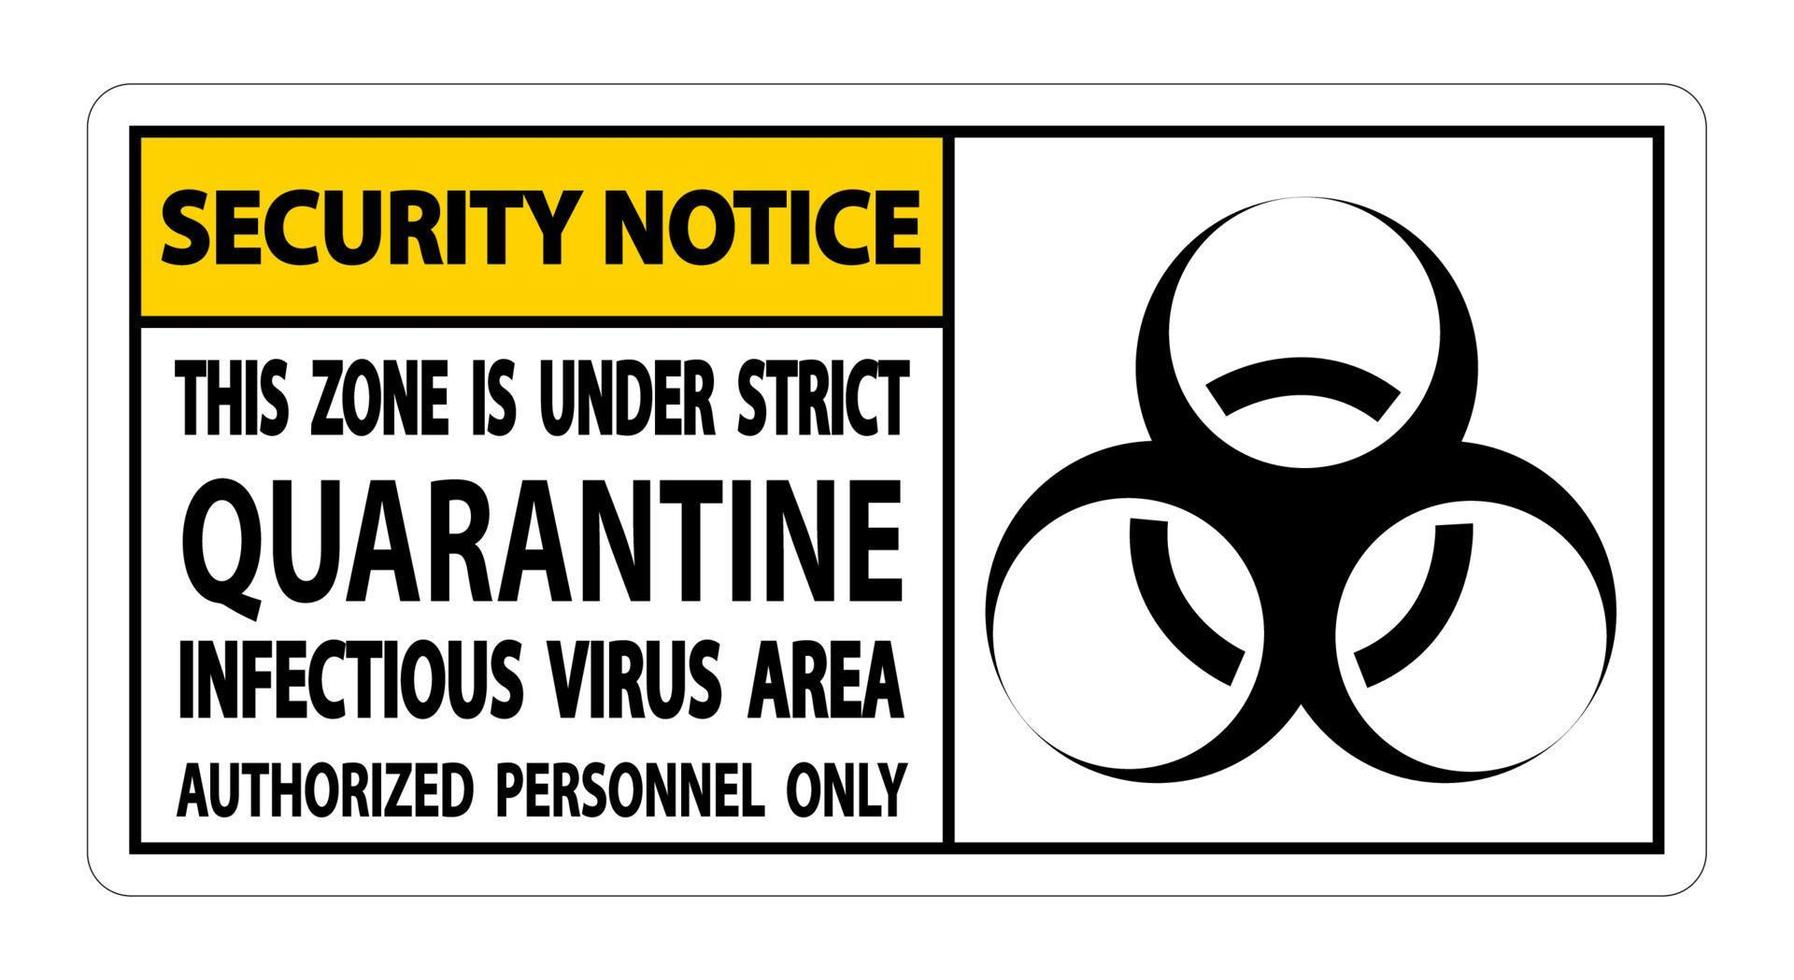 aviso de segurança quarentena sinal de área de vírus infeccioso isolado em fundo branco, ilustração vetorial eps.10 vetor